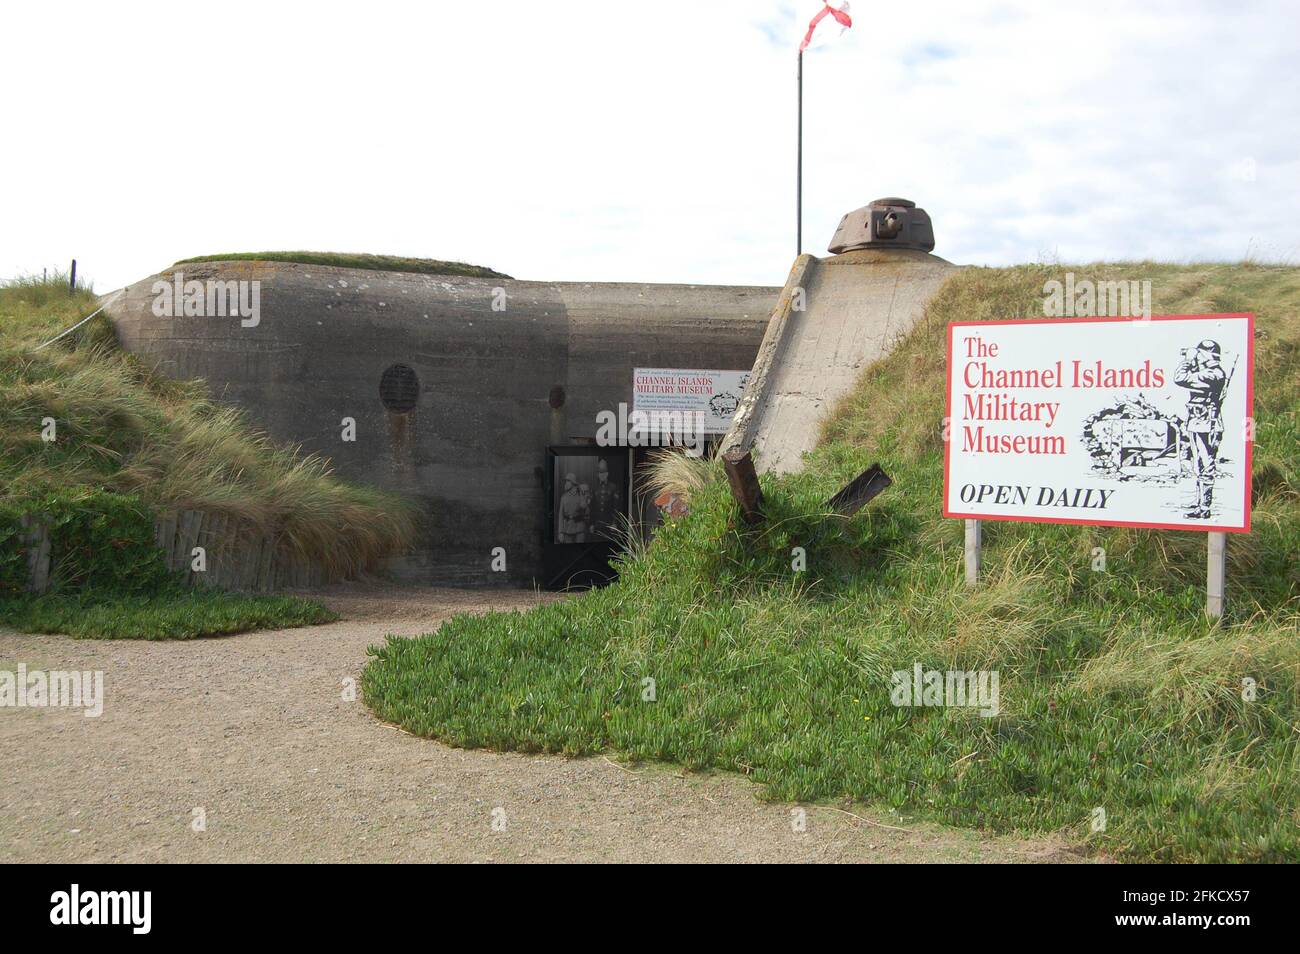 kant schipper onvoorwaardelijk German bunker and military museum Jersey Channel Islands UK Stock Photo -  Alamy